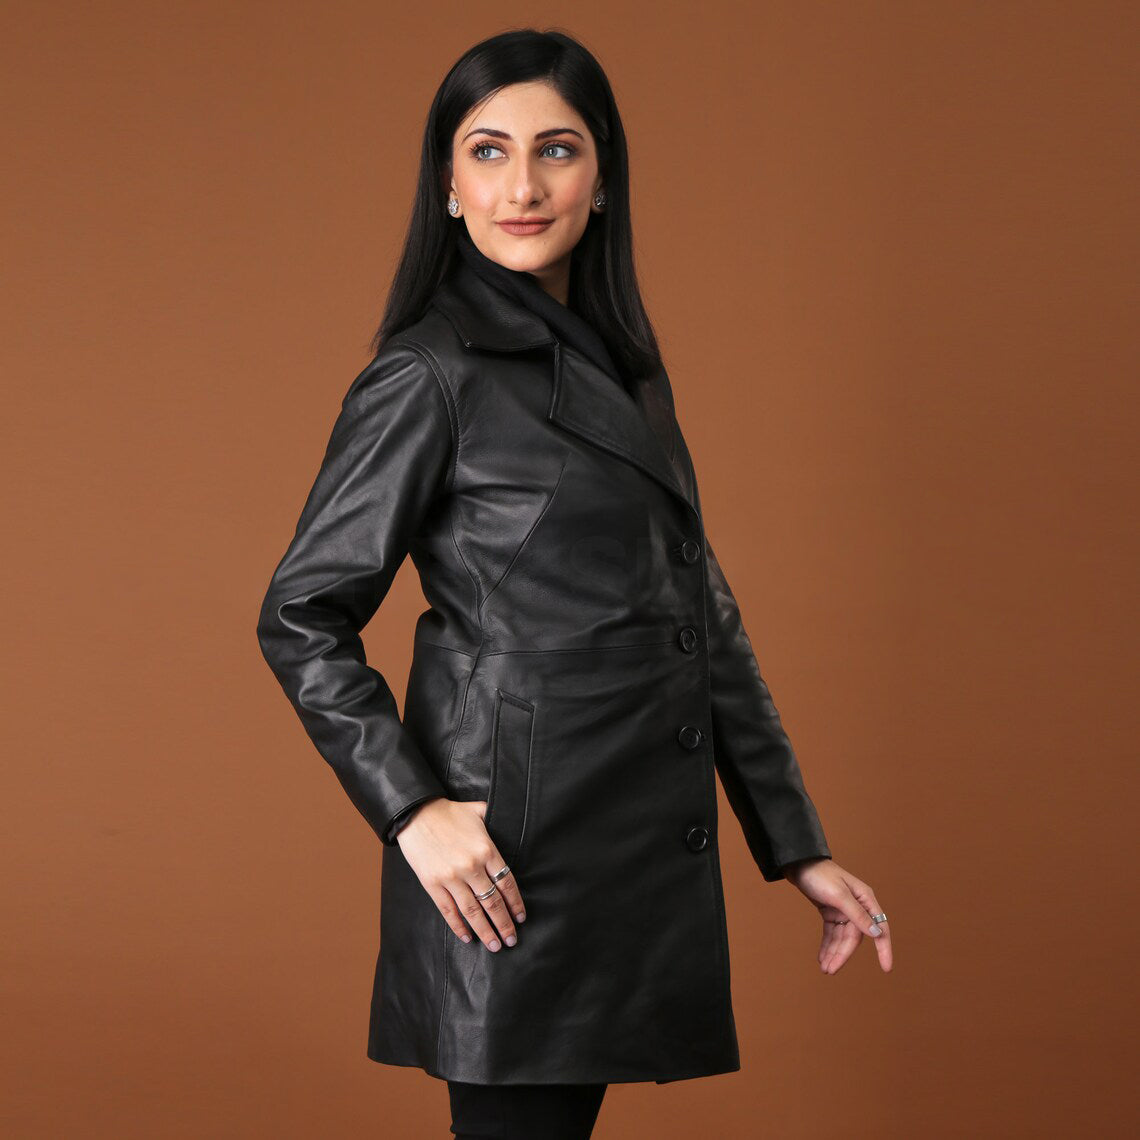 Elegant Handmade Black Leather Trench Coat for Women